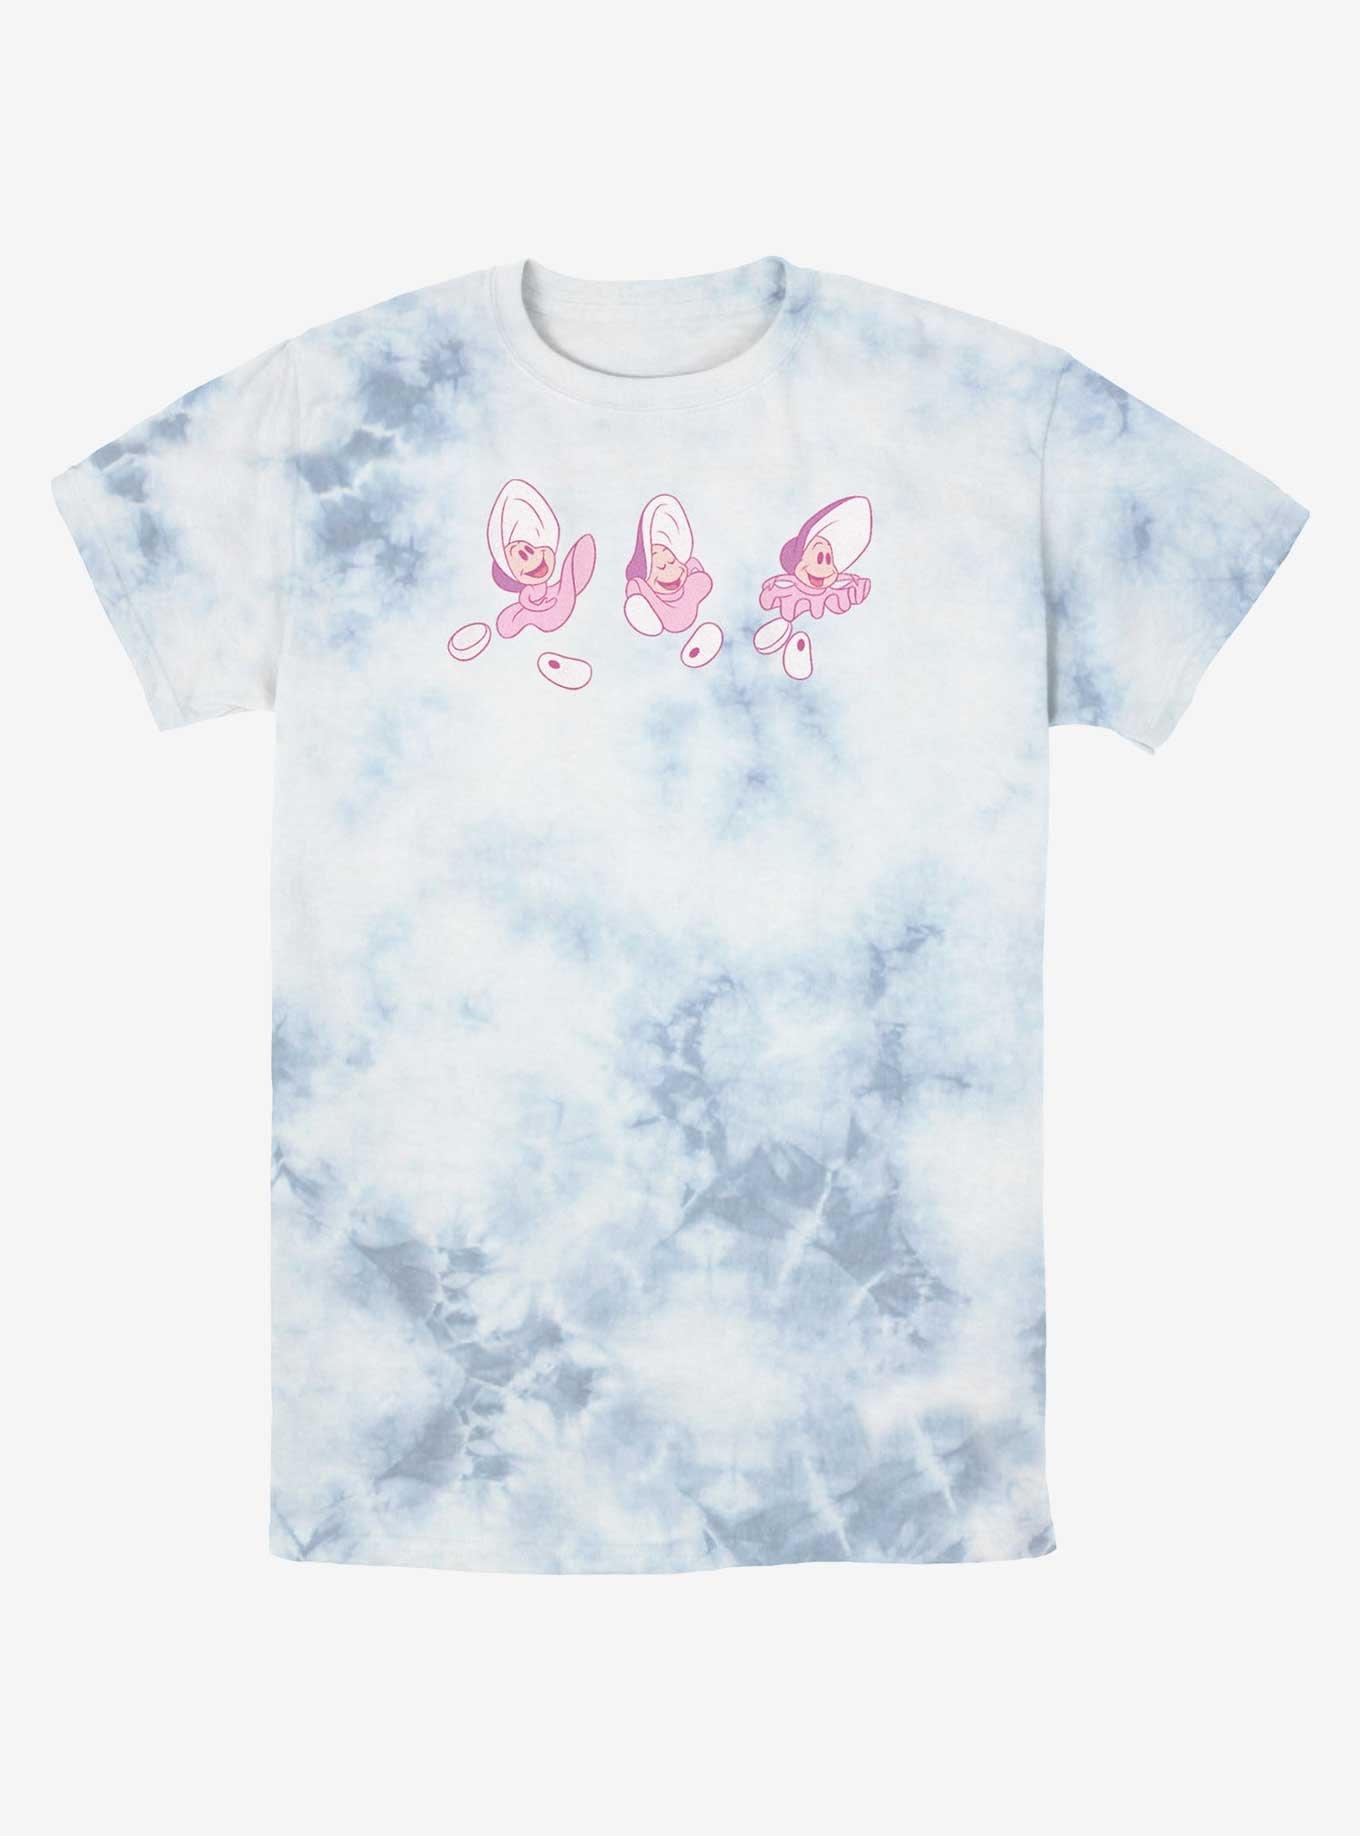 Disney Alice In Wonderland Dancing Oysters Tie-Dye T-Shirt, WHITEBLUE, hi-res